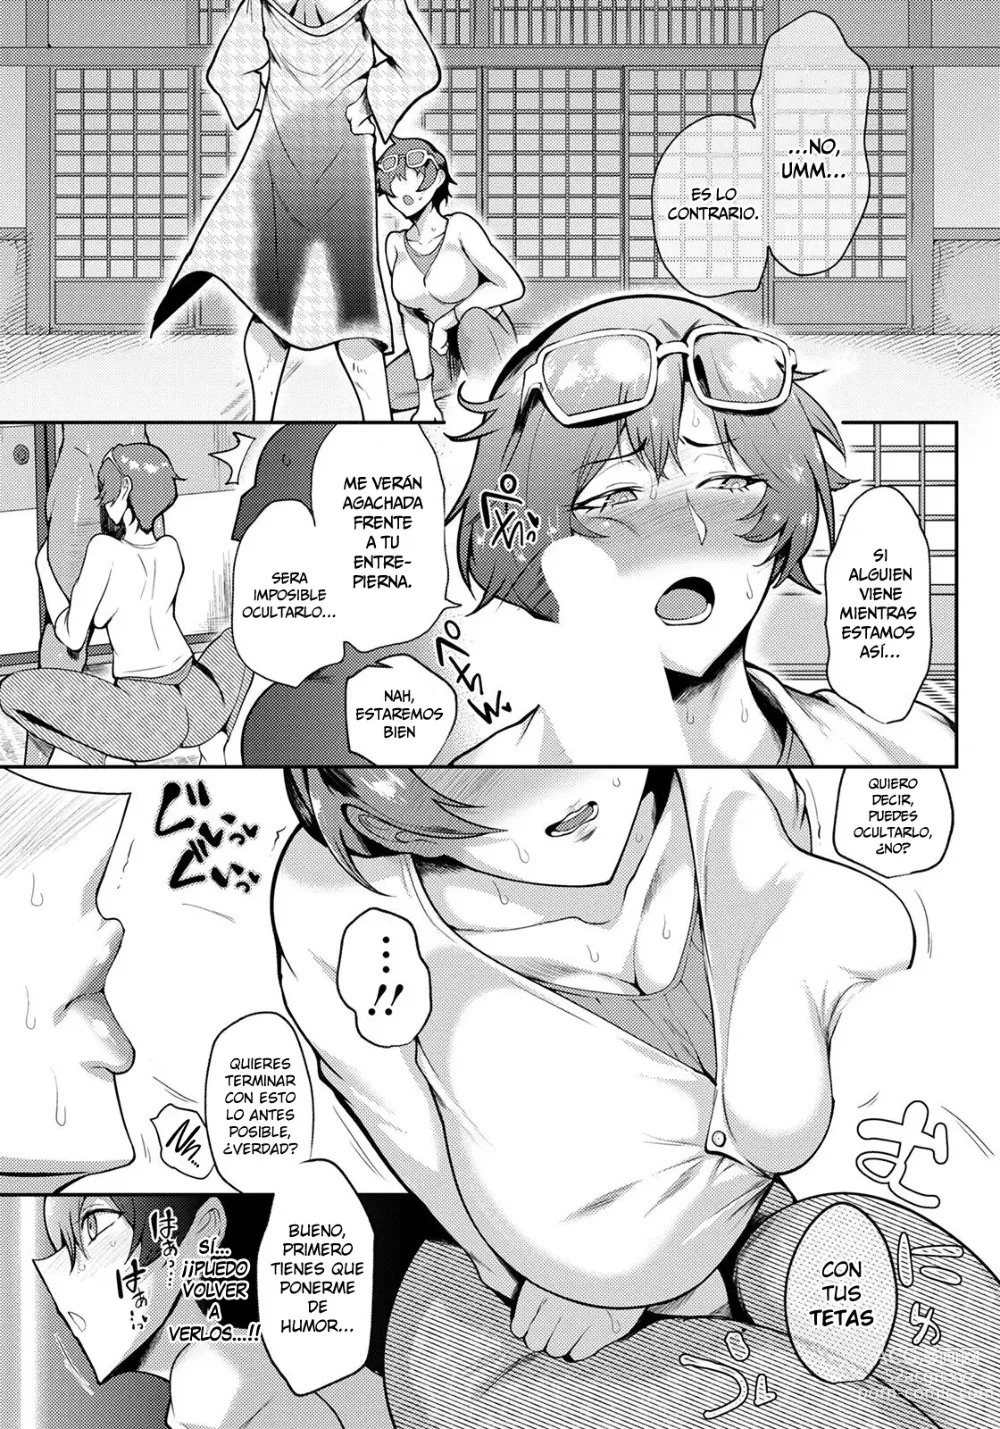 Page 3 of manga Fusumagai no Mesu Kage ~Sensei wa Ayashiku Yurete~